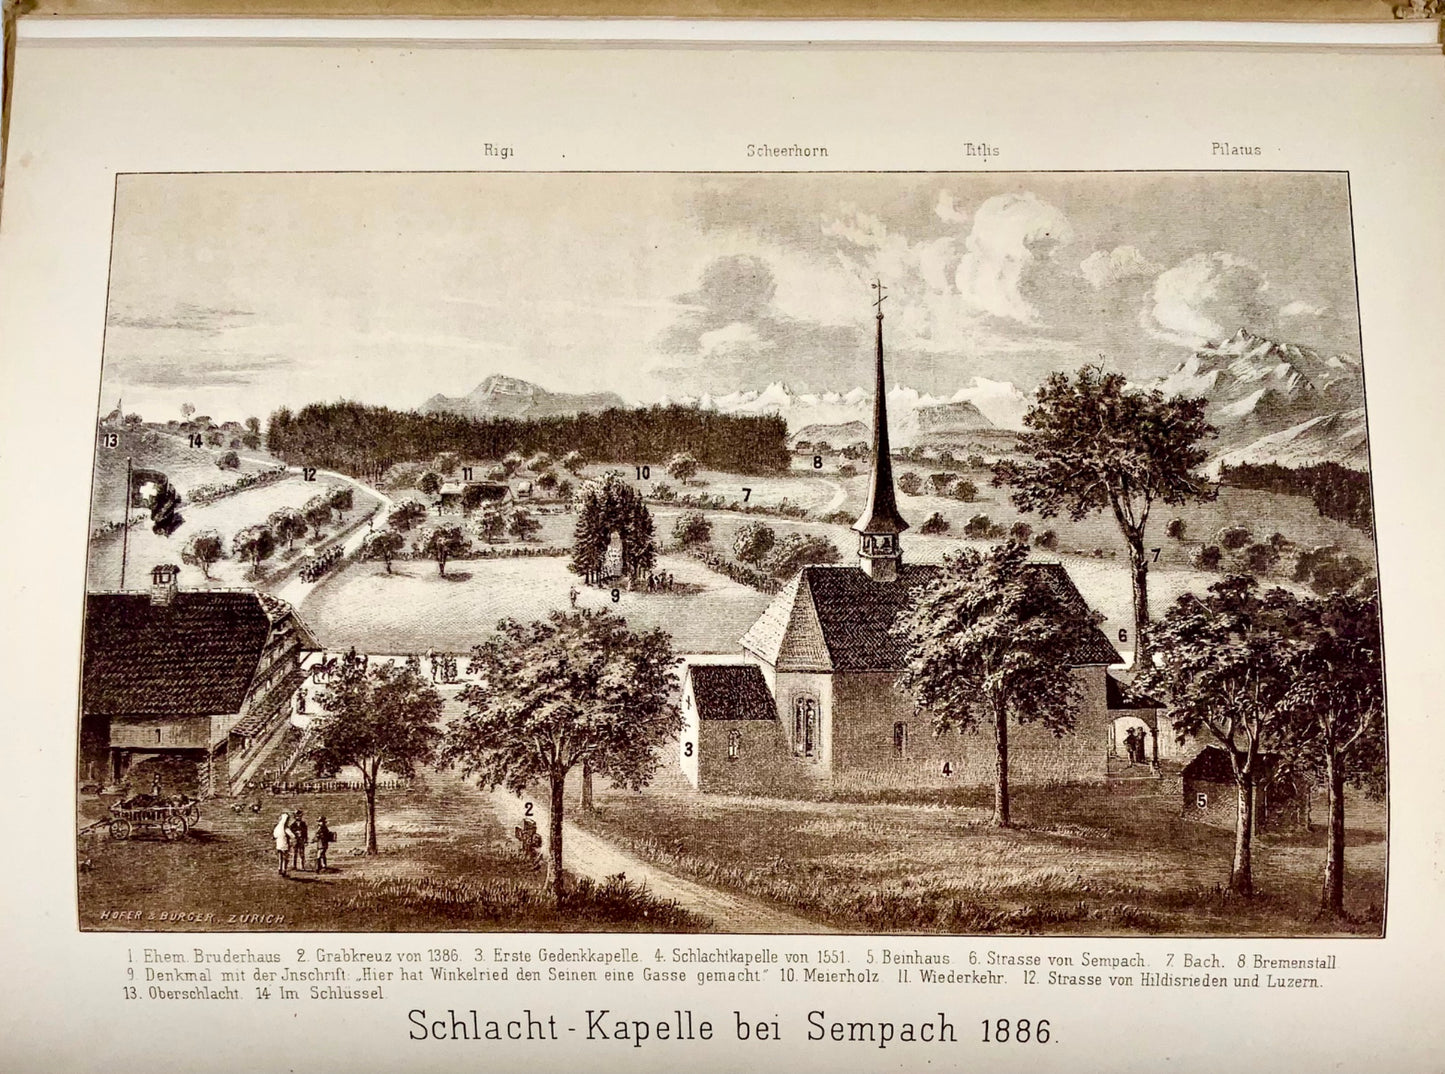 1886 Göschen, Eroi della battaglia di Sempach, 23 tavole, 4to, Svizzera, storia militare, libro